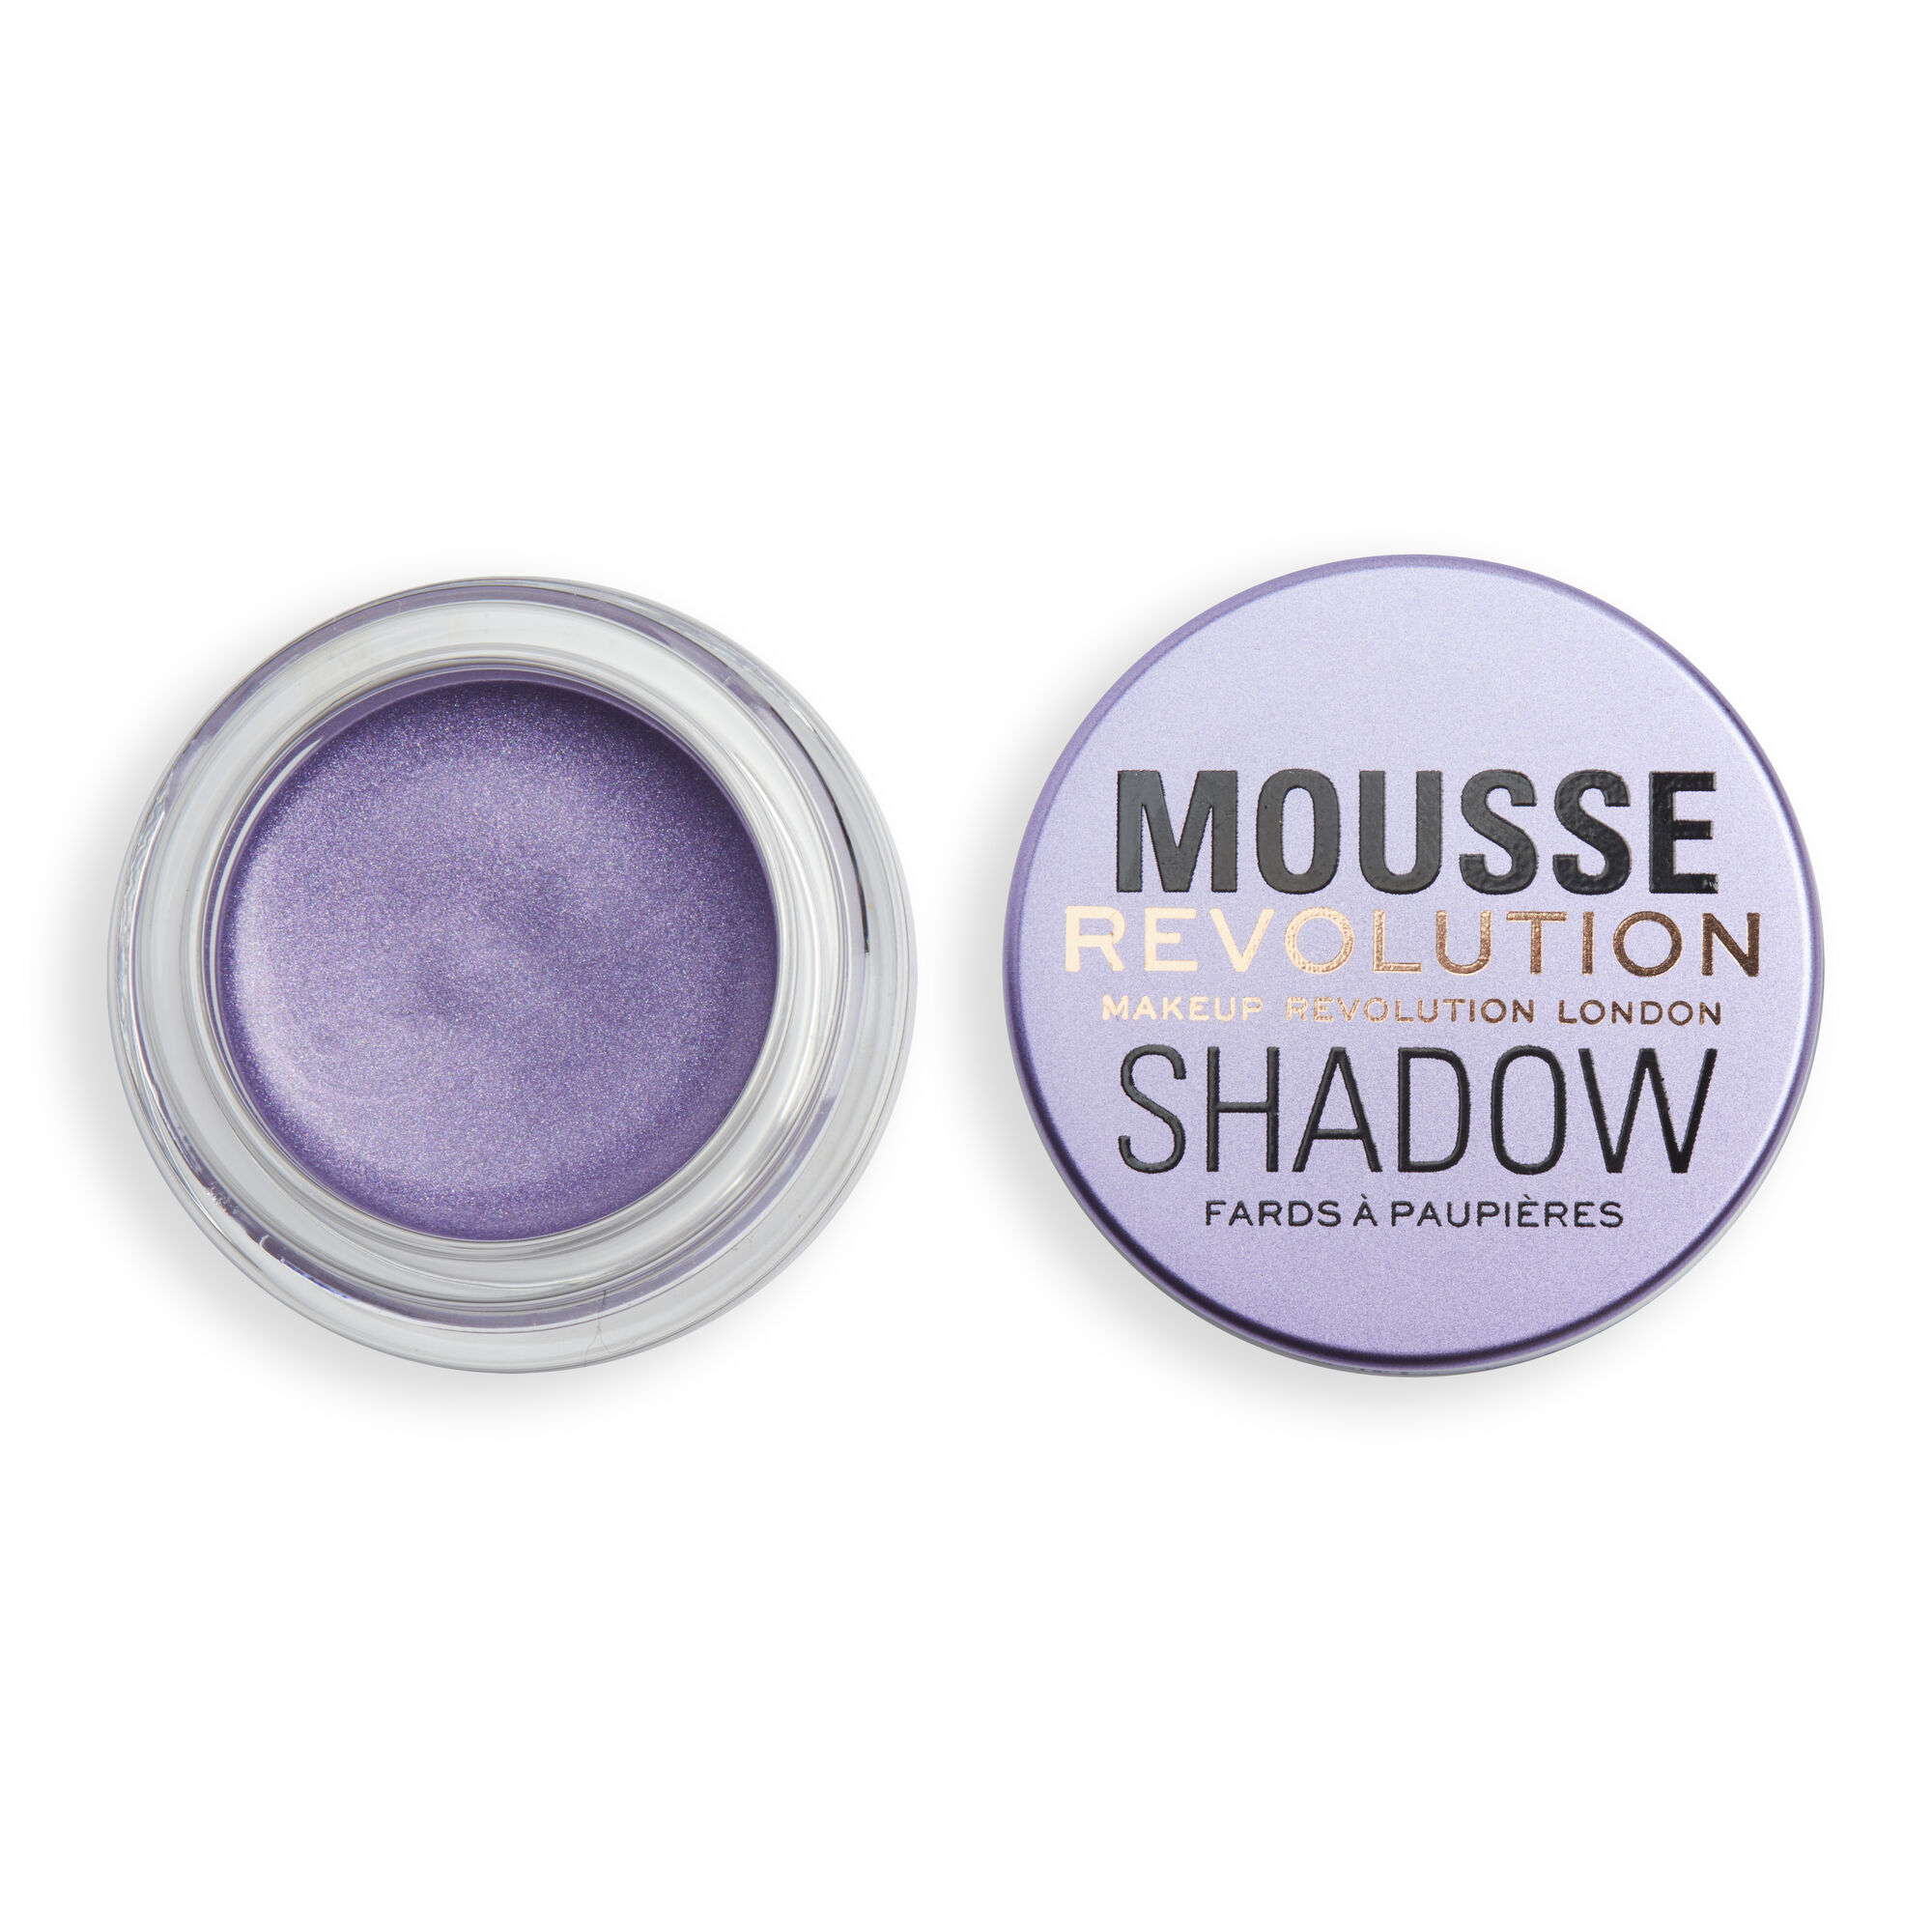 Тени Revolution Makeup кремовые для век Mousse Cream Eyeshadow, Lilac тени для глаз stellary cream eyeshadow кремовые тон 06 3 г